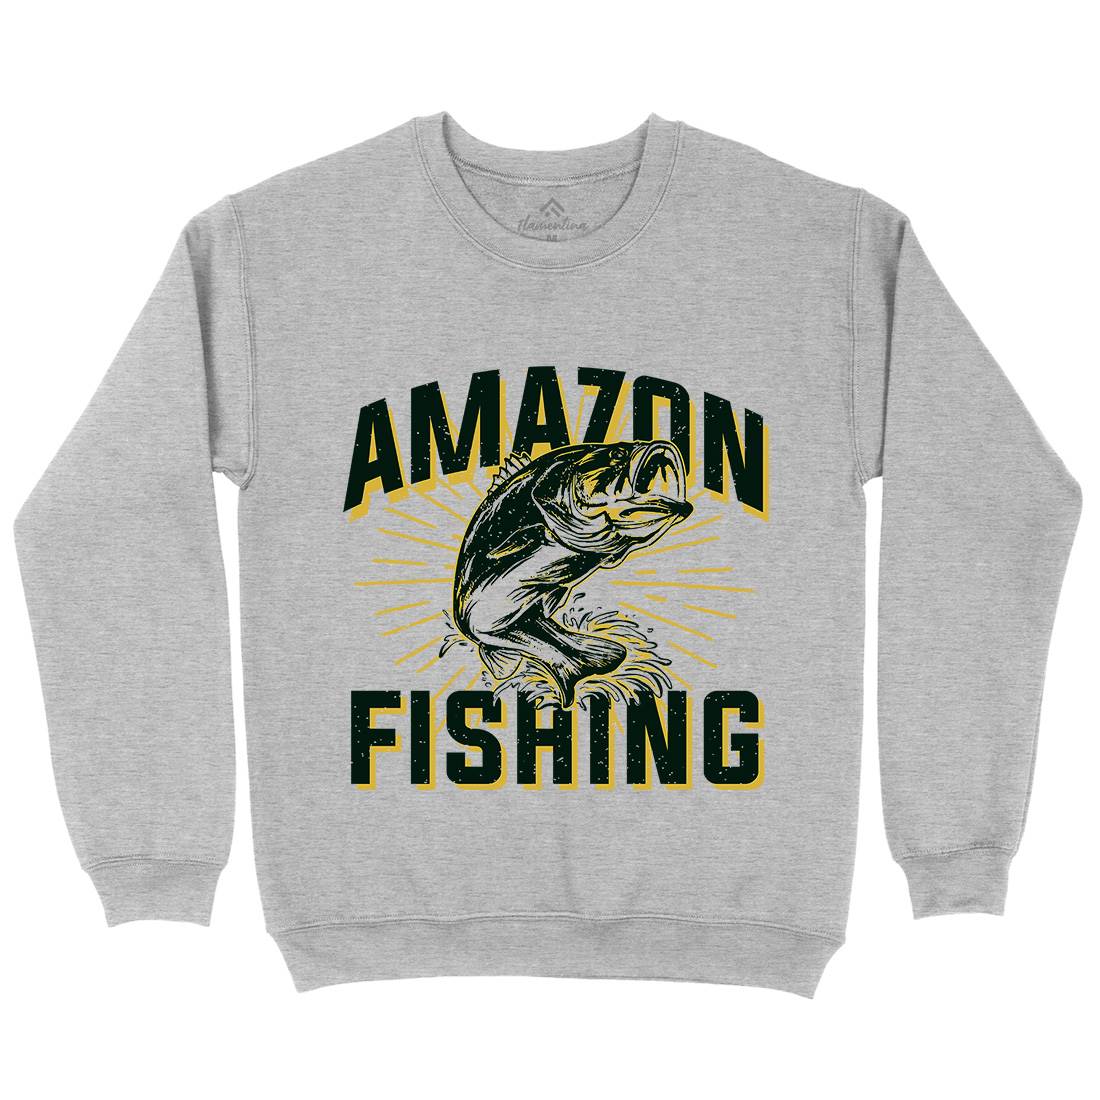 Amazon Kids Crew Neck Sweatshirt Fishing B678